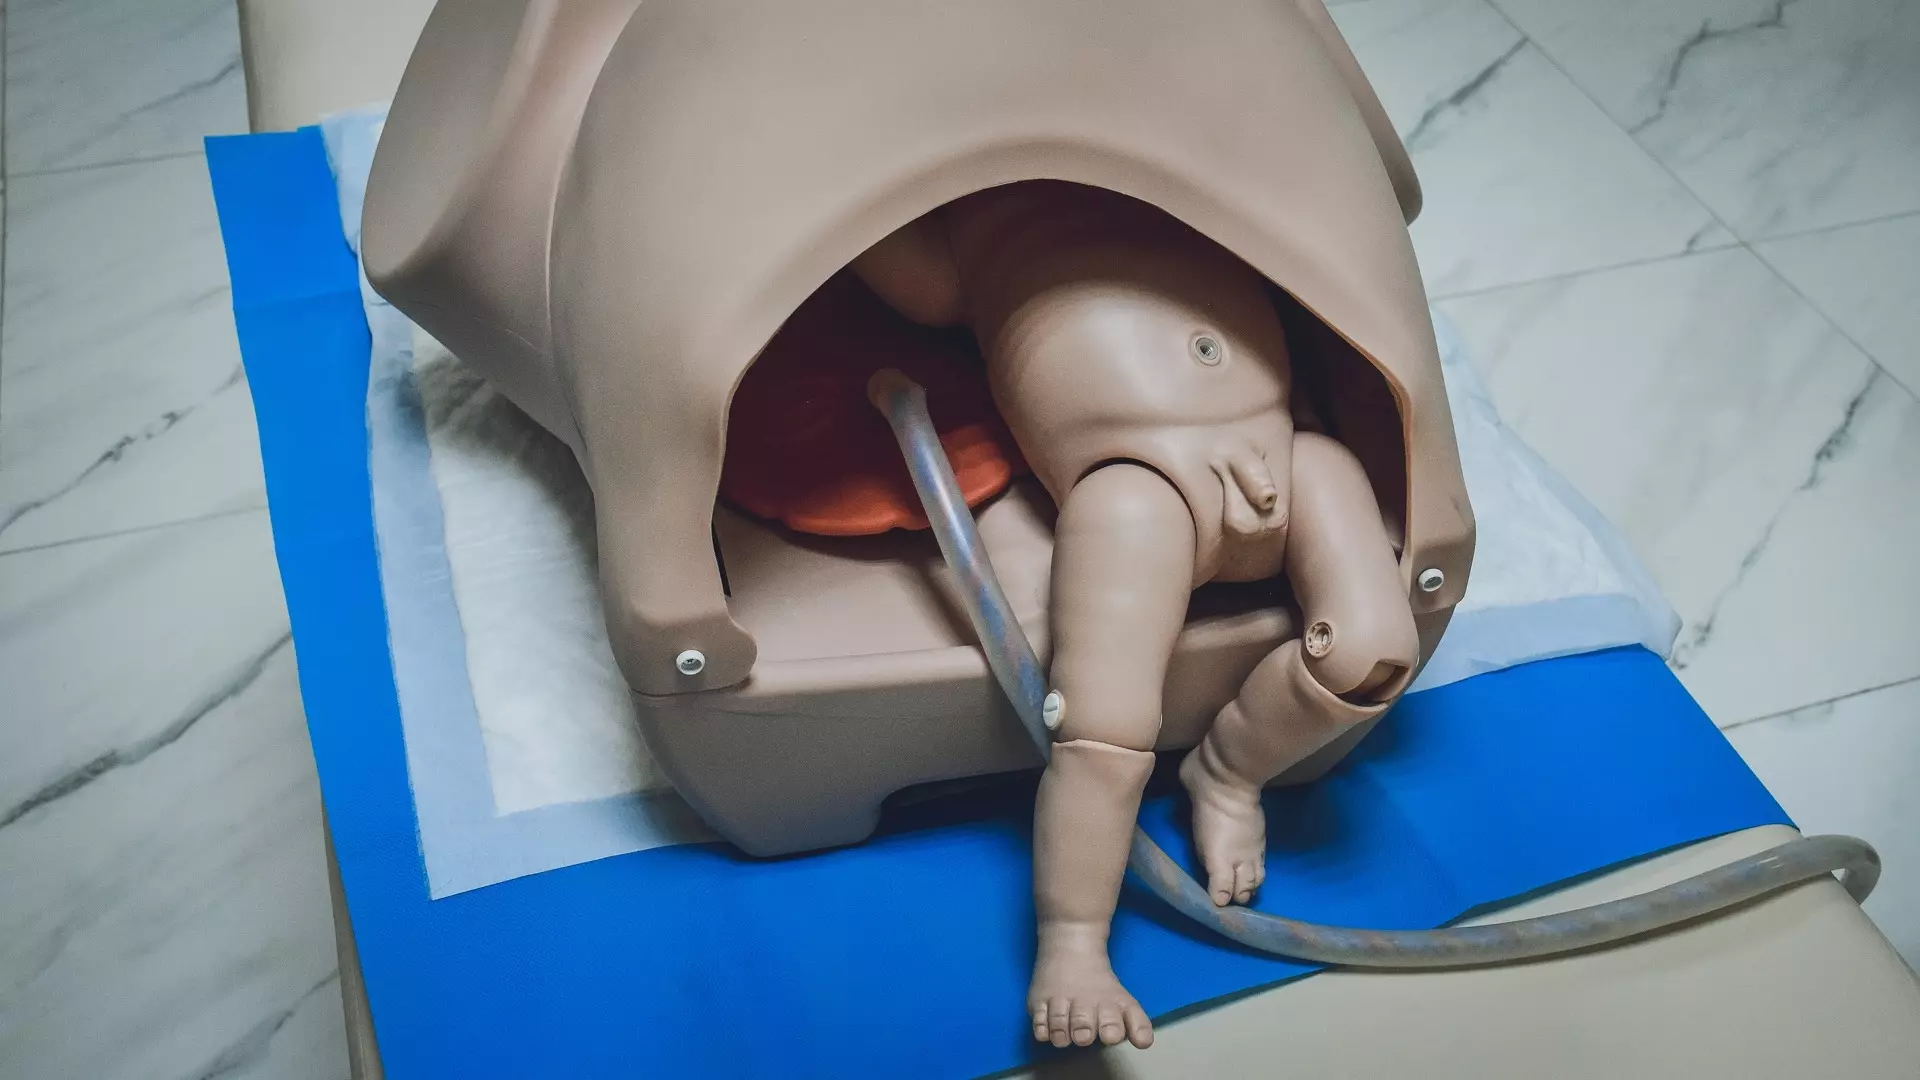 СКР расследует дело о внутриутробной смерти младенца у жительницы Магнитогорска